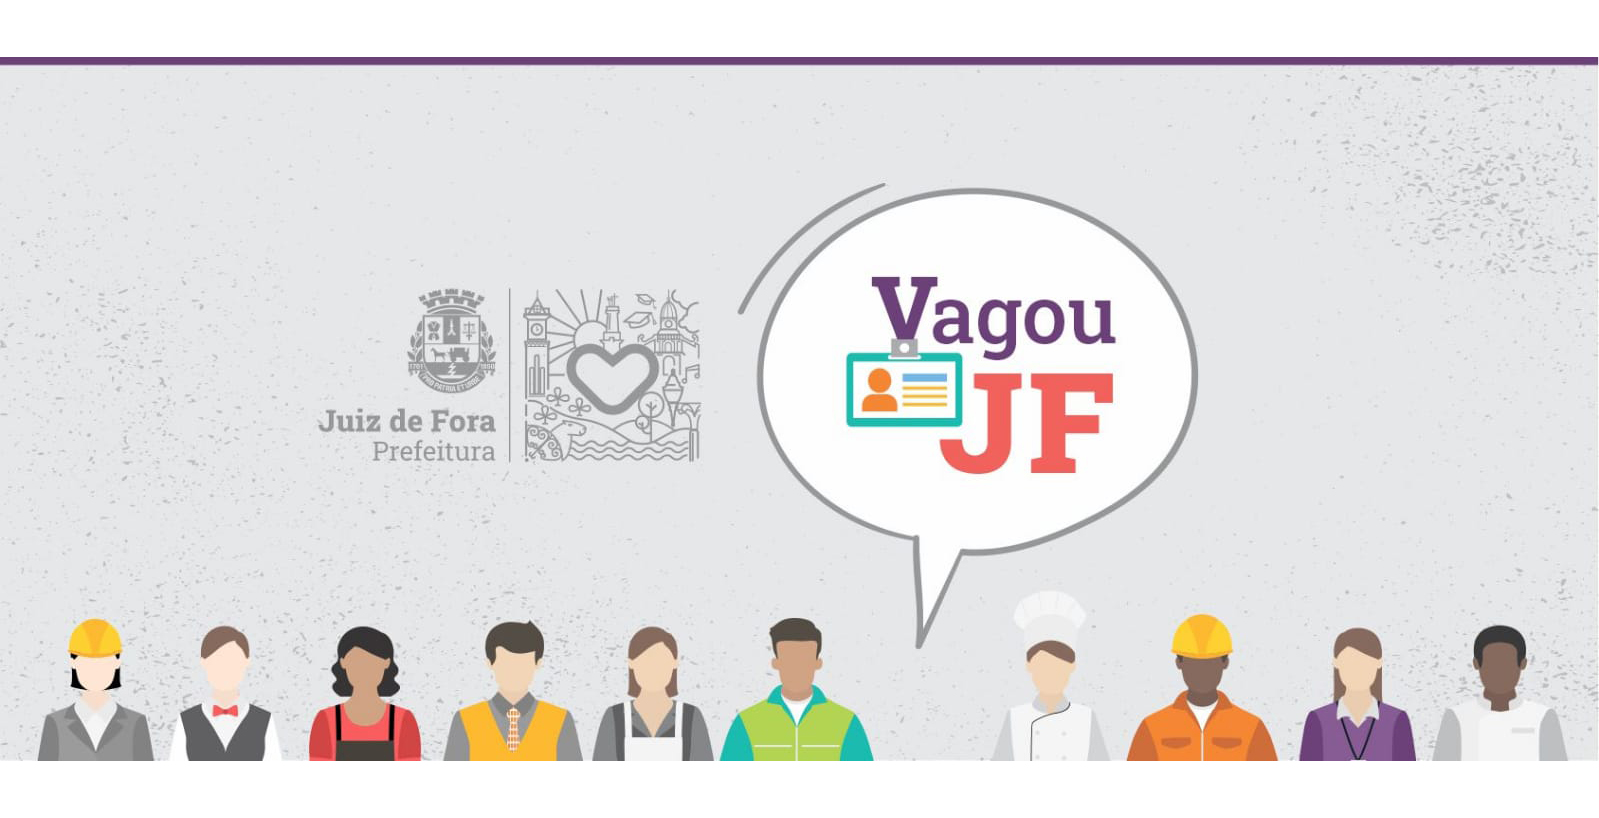 Portal de Notcias PJF | Vagou JF tem vagas abertas para corretor imobilirio e outras oportunidades | SEDIC - 1/7/2022